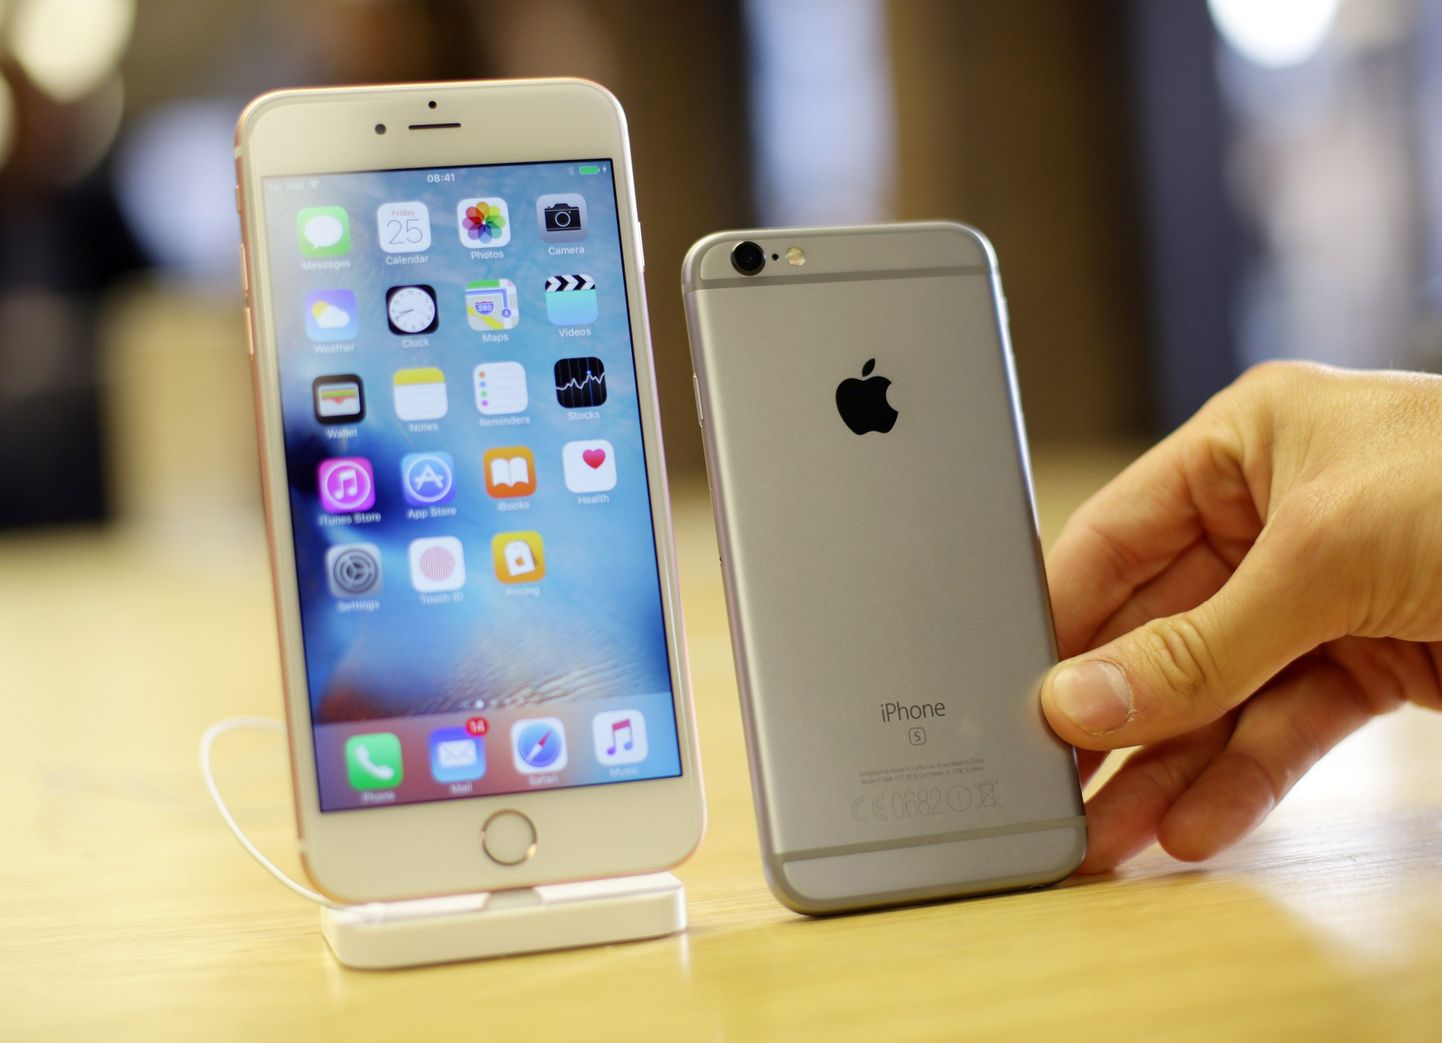 За первые три дня продаж компания Apple продала 13 млн смартфонов новых моделей iPhone 6S и iPhone 6S Plus.